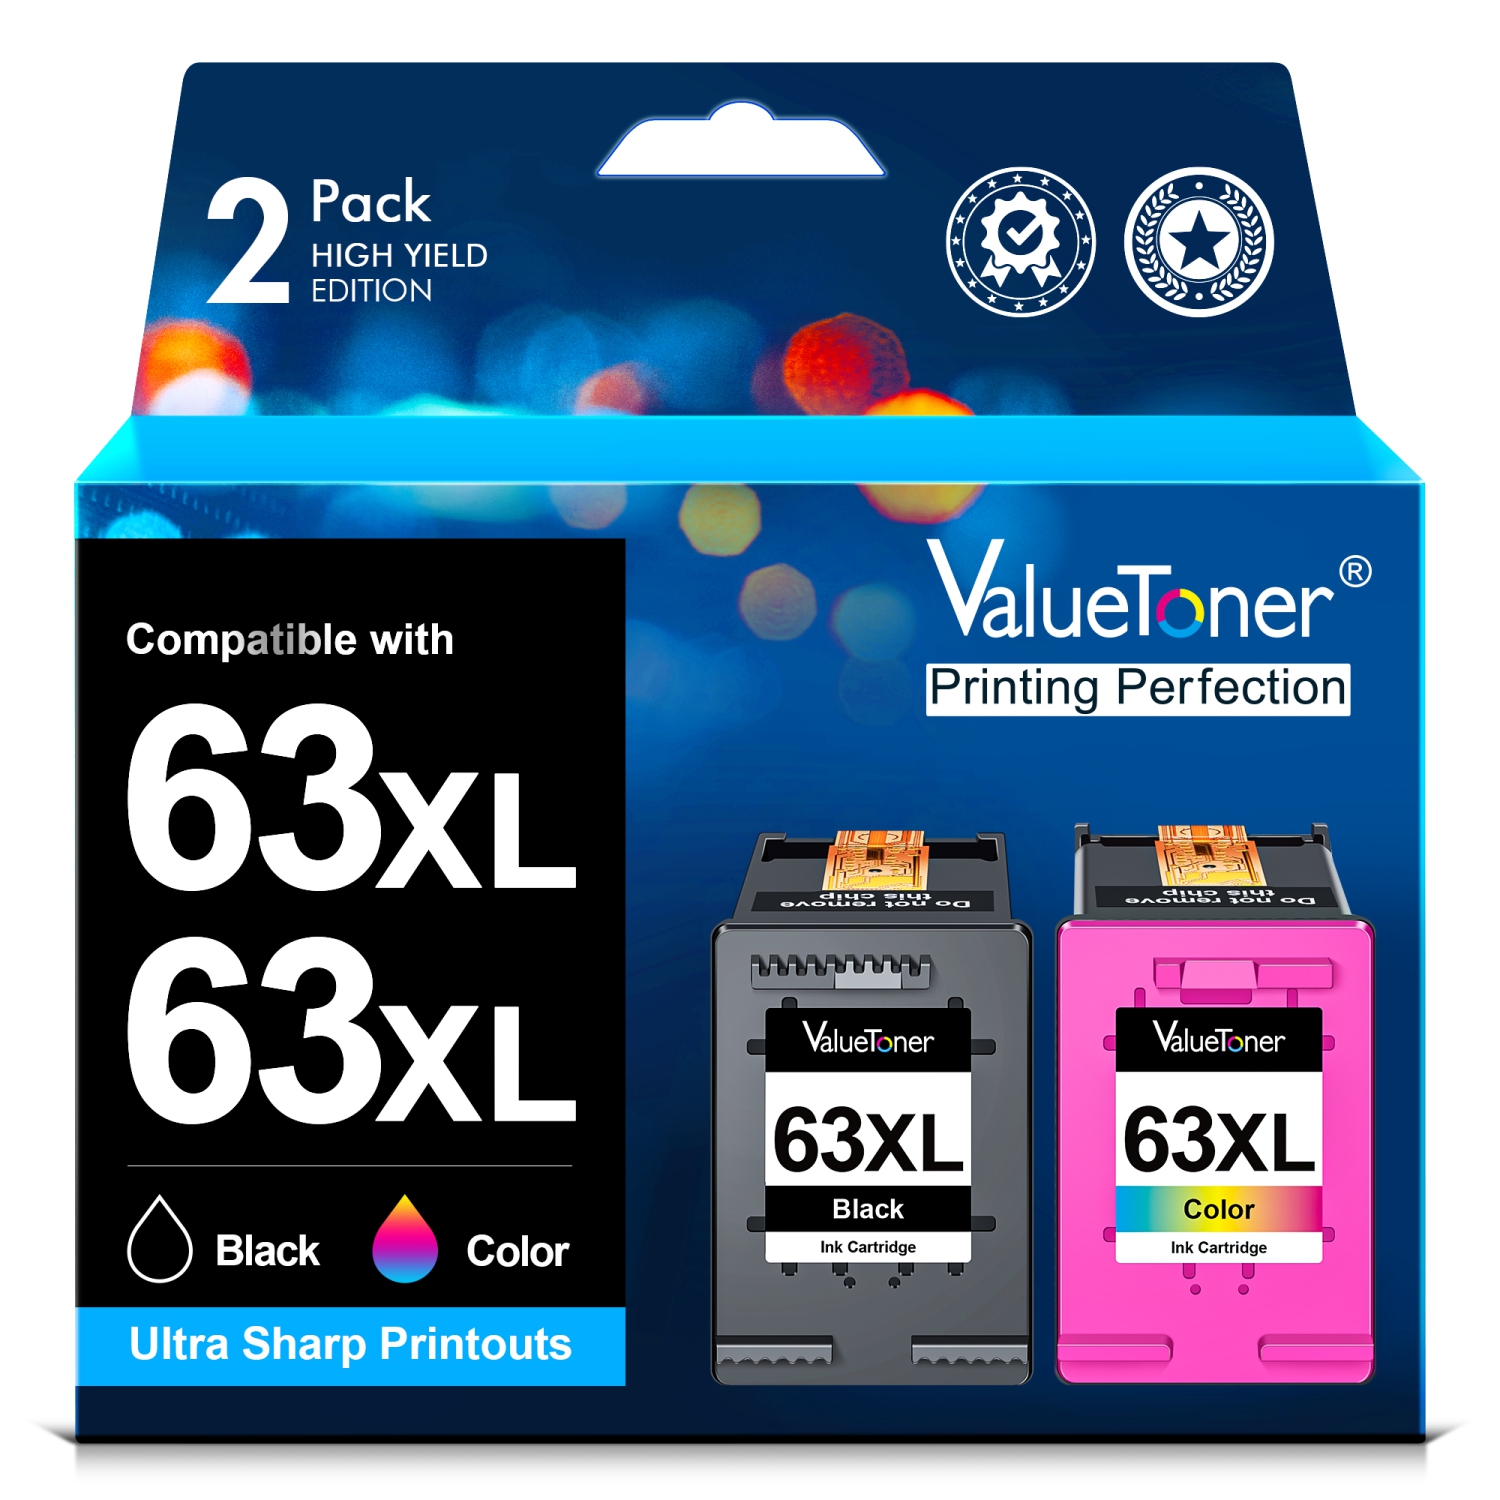 Valuetoner Refurbished (Excellent) Ink Cartridge Replacement for HP 63 XL 63XL for Envy 4512 Officejet 3830 4655 5252 Deskjet 2132 3630 (Black, Color, 2-Pack)